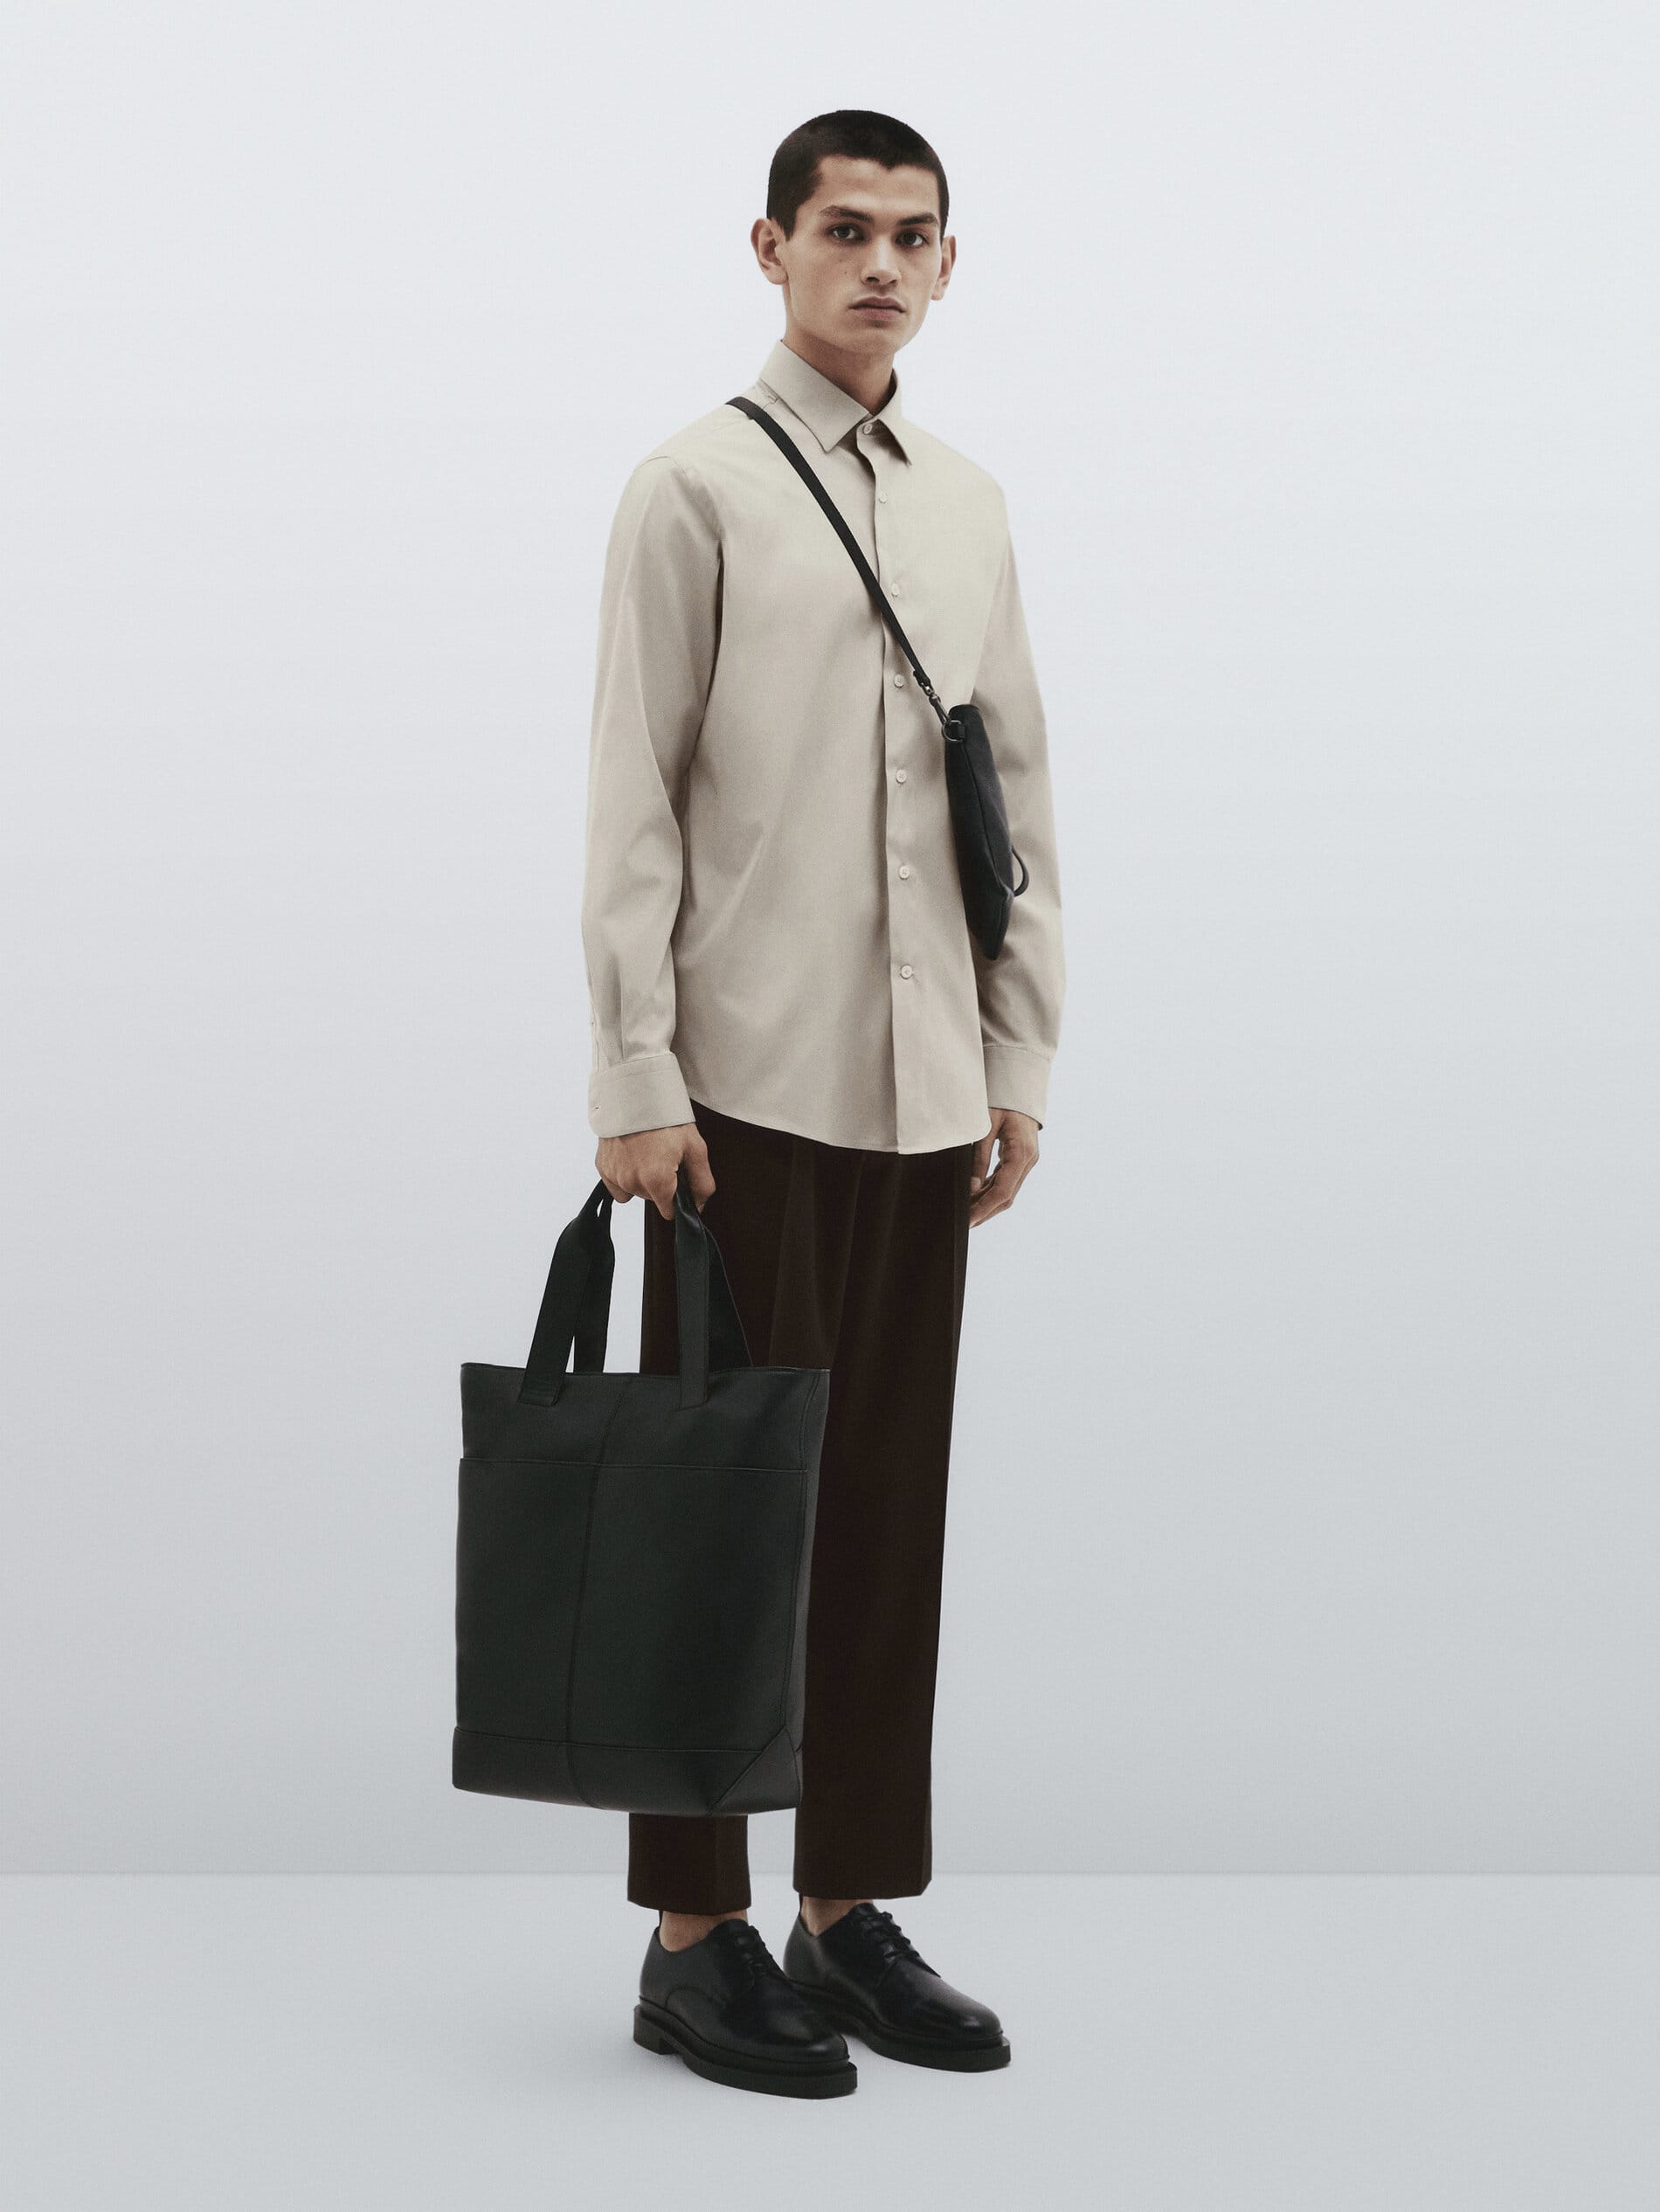 Massimo Dutti Studio Collection 2023 Launches Menswear In Singapore ...